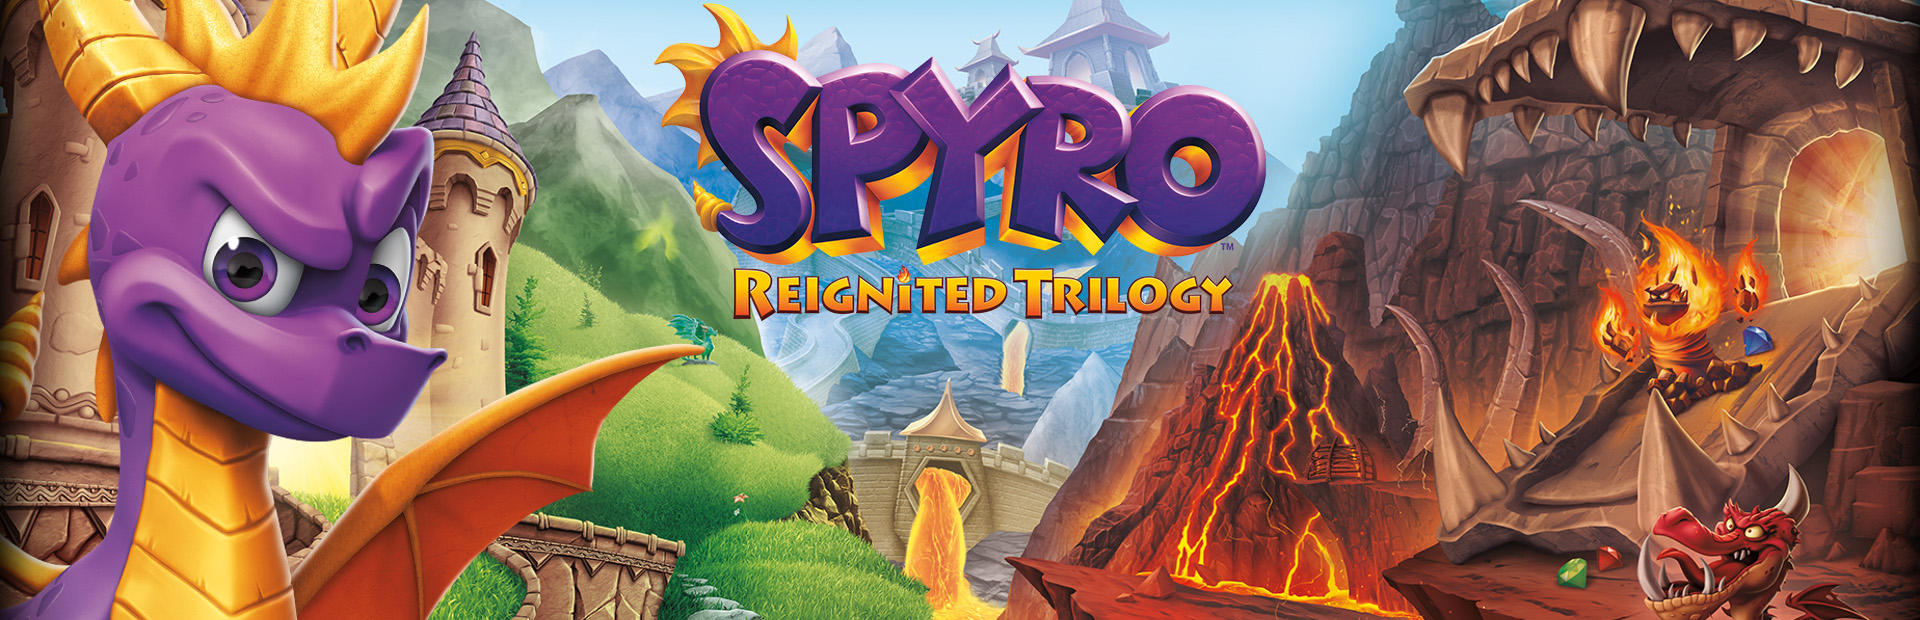 دانلود بازی Spyro Reignited Trilogy برای PC | گیمباتو